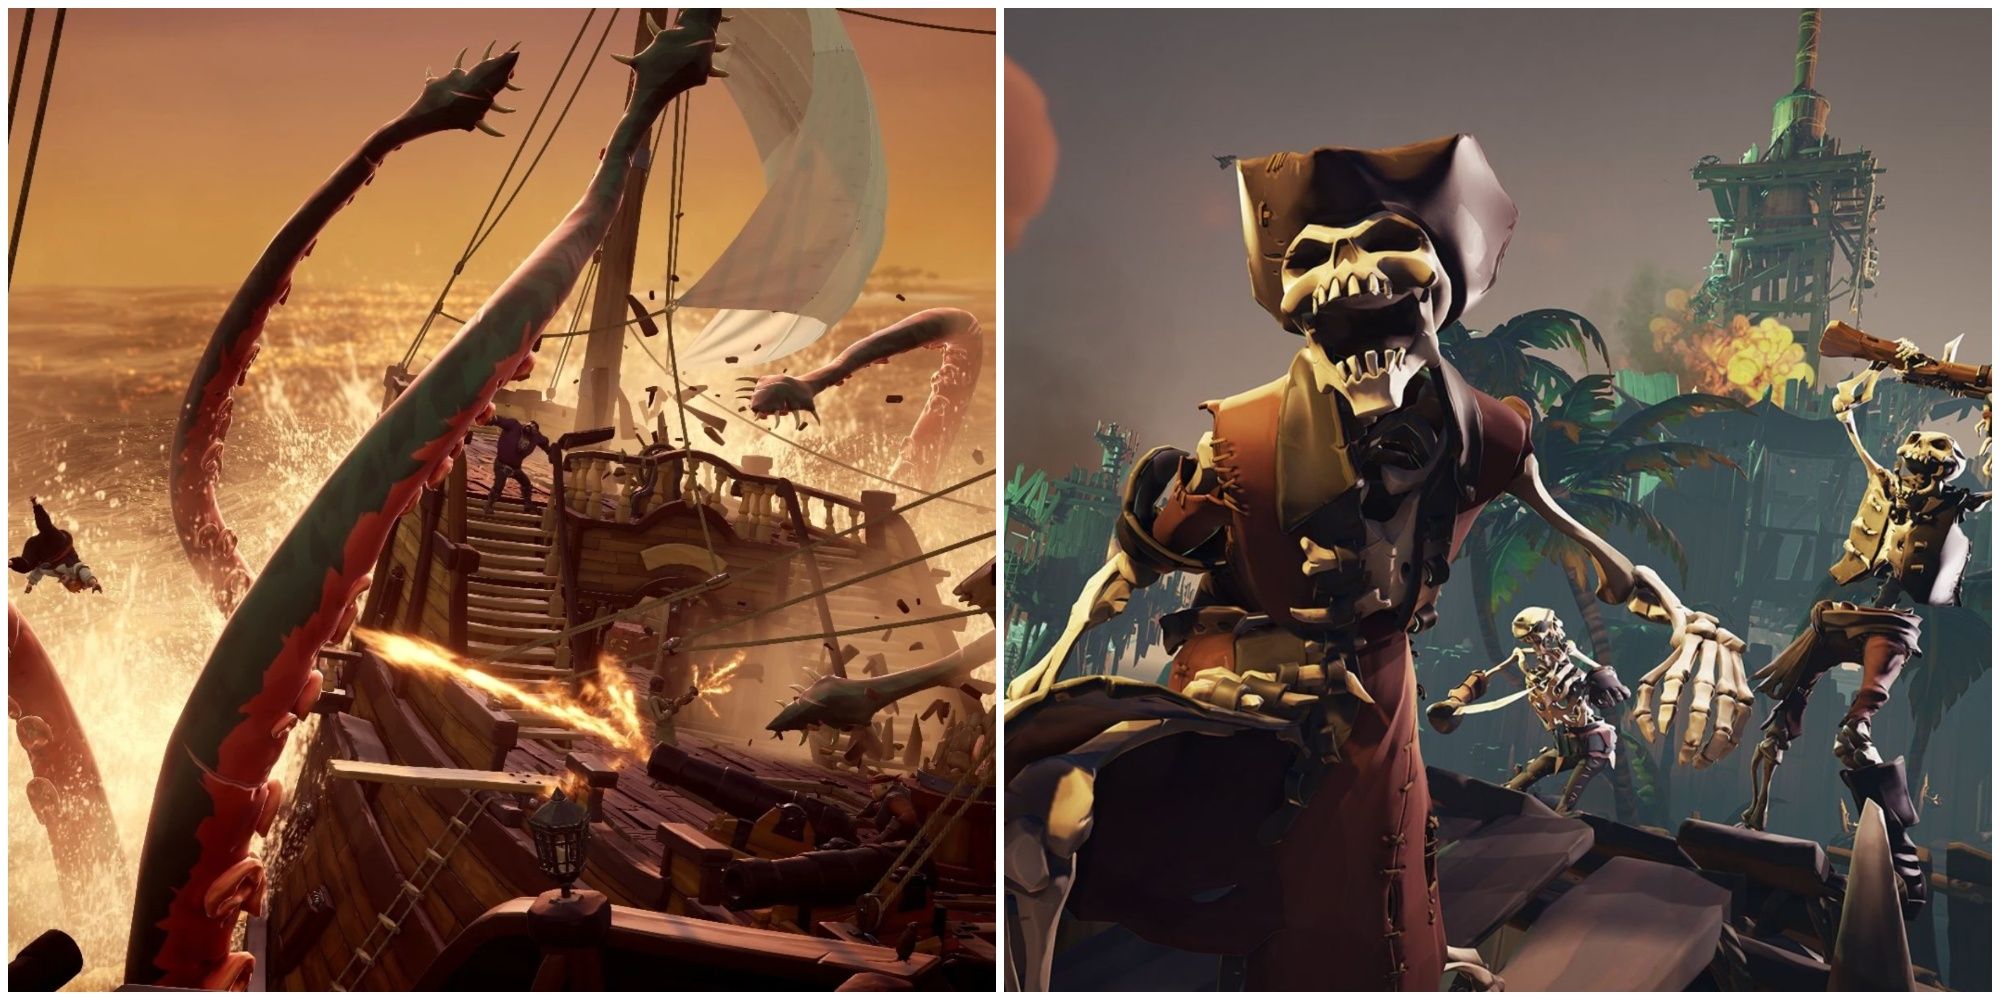 Sea of Thieves Skeleton and Kraken Enemies